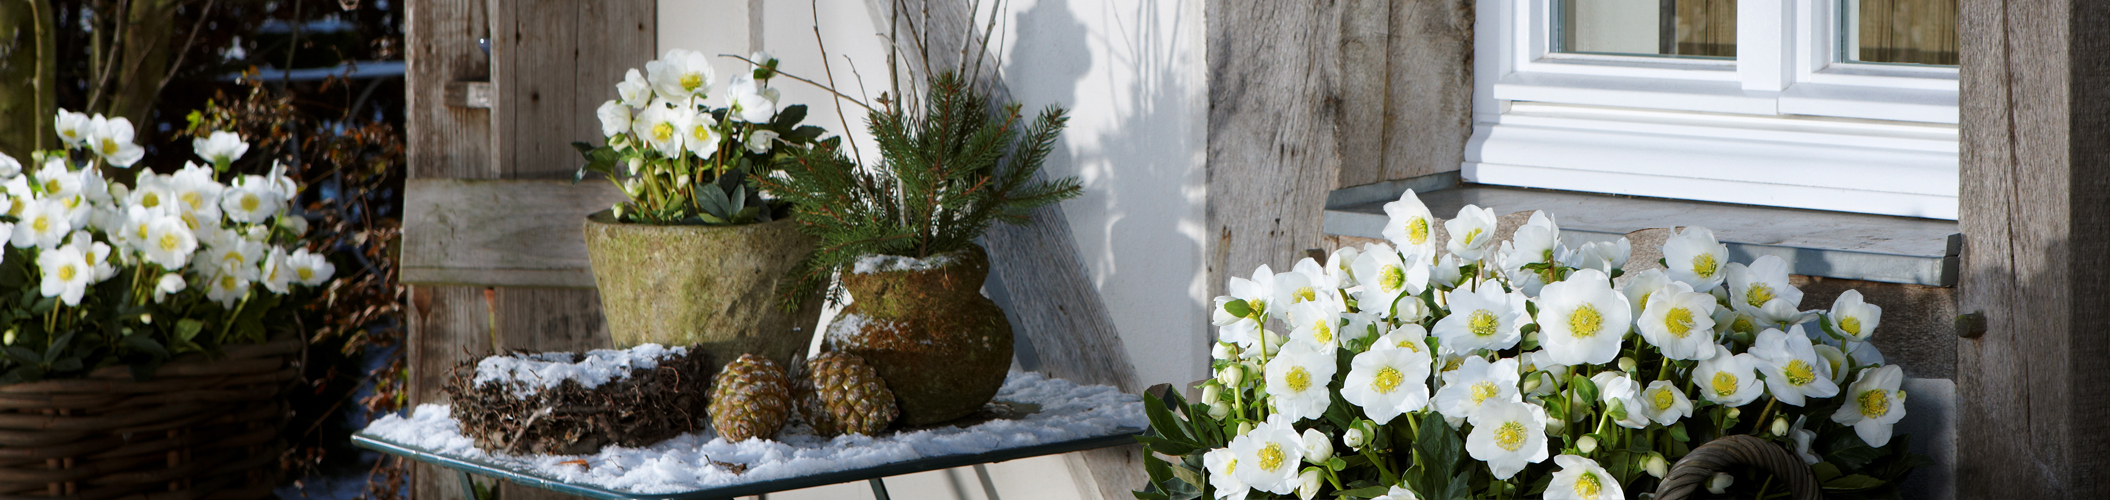 Helleborus Gold Collection Christrosen auf der Terrasse im Schnee